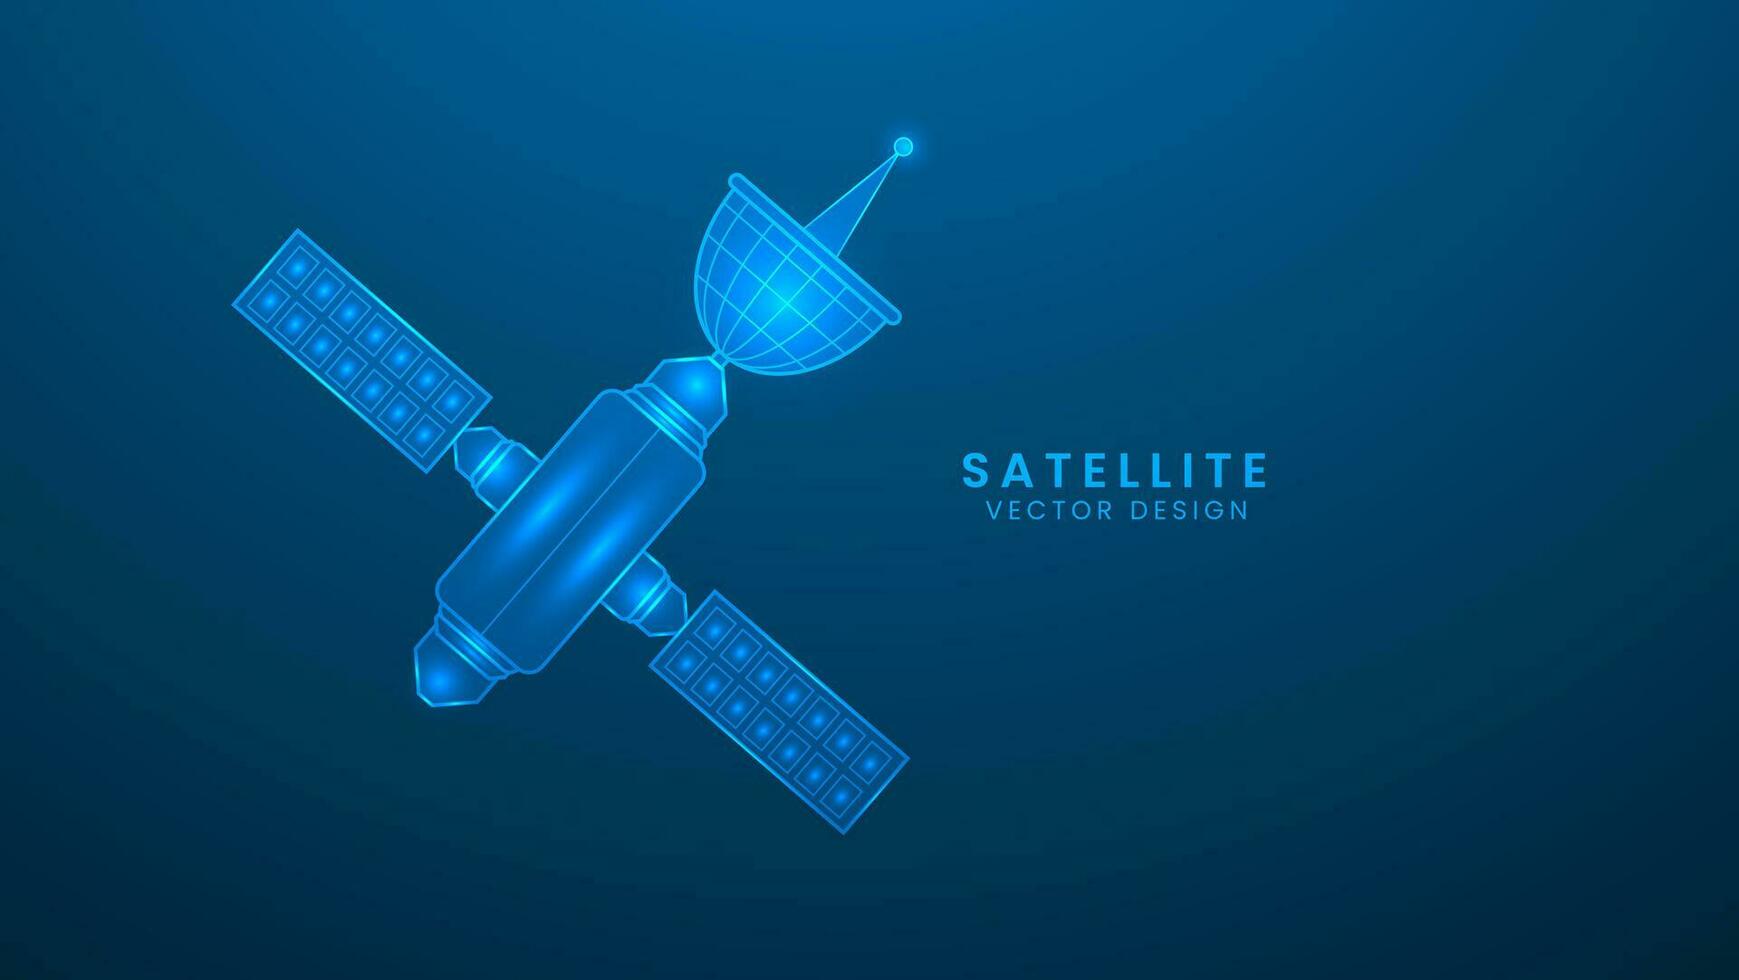 ruimte satelliet communicatie technologie netwerk. vector illustratie met licht effect en neon